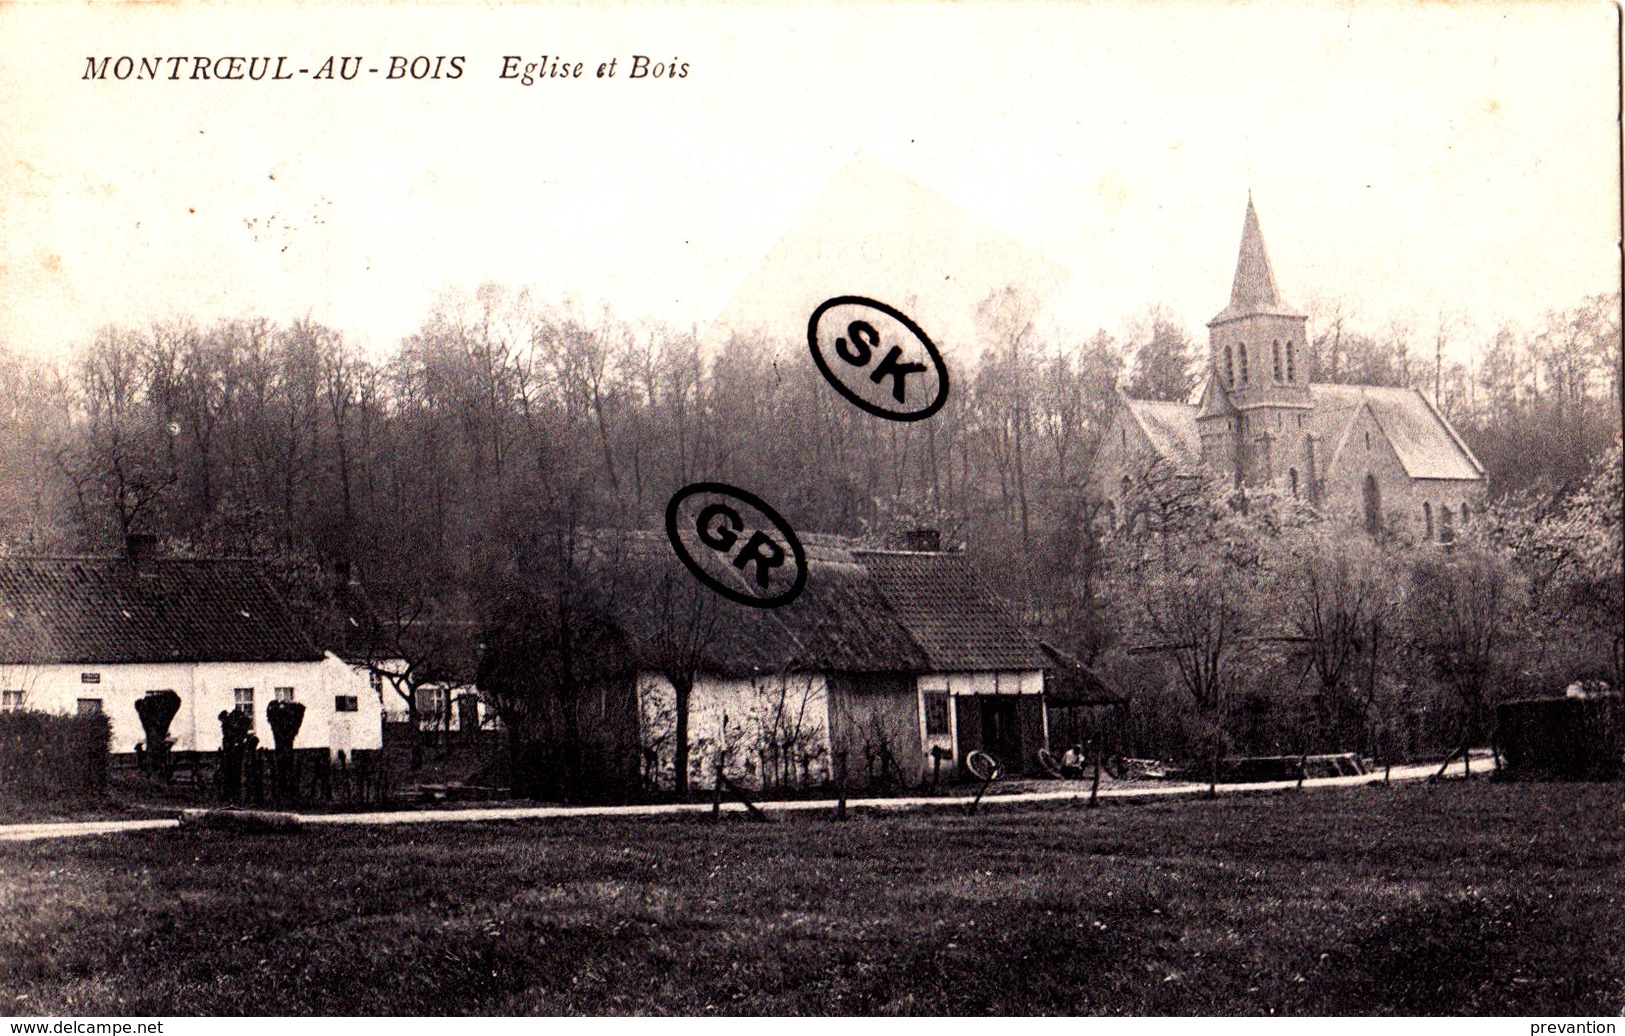 MONTROEUL-AU-BOIS - Eglise Et Bois - Frasnes-lez-Anvaing